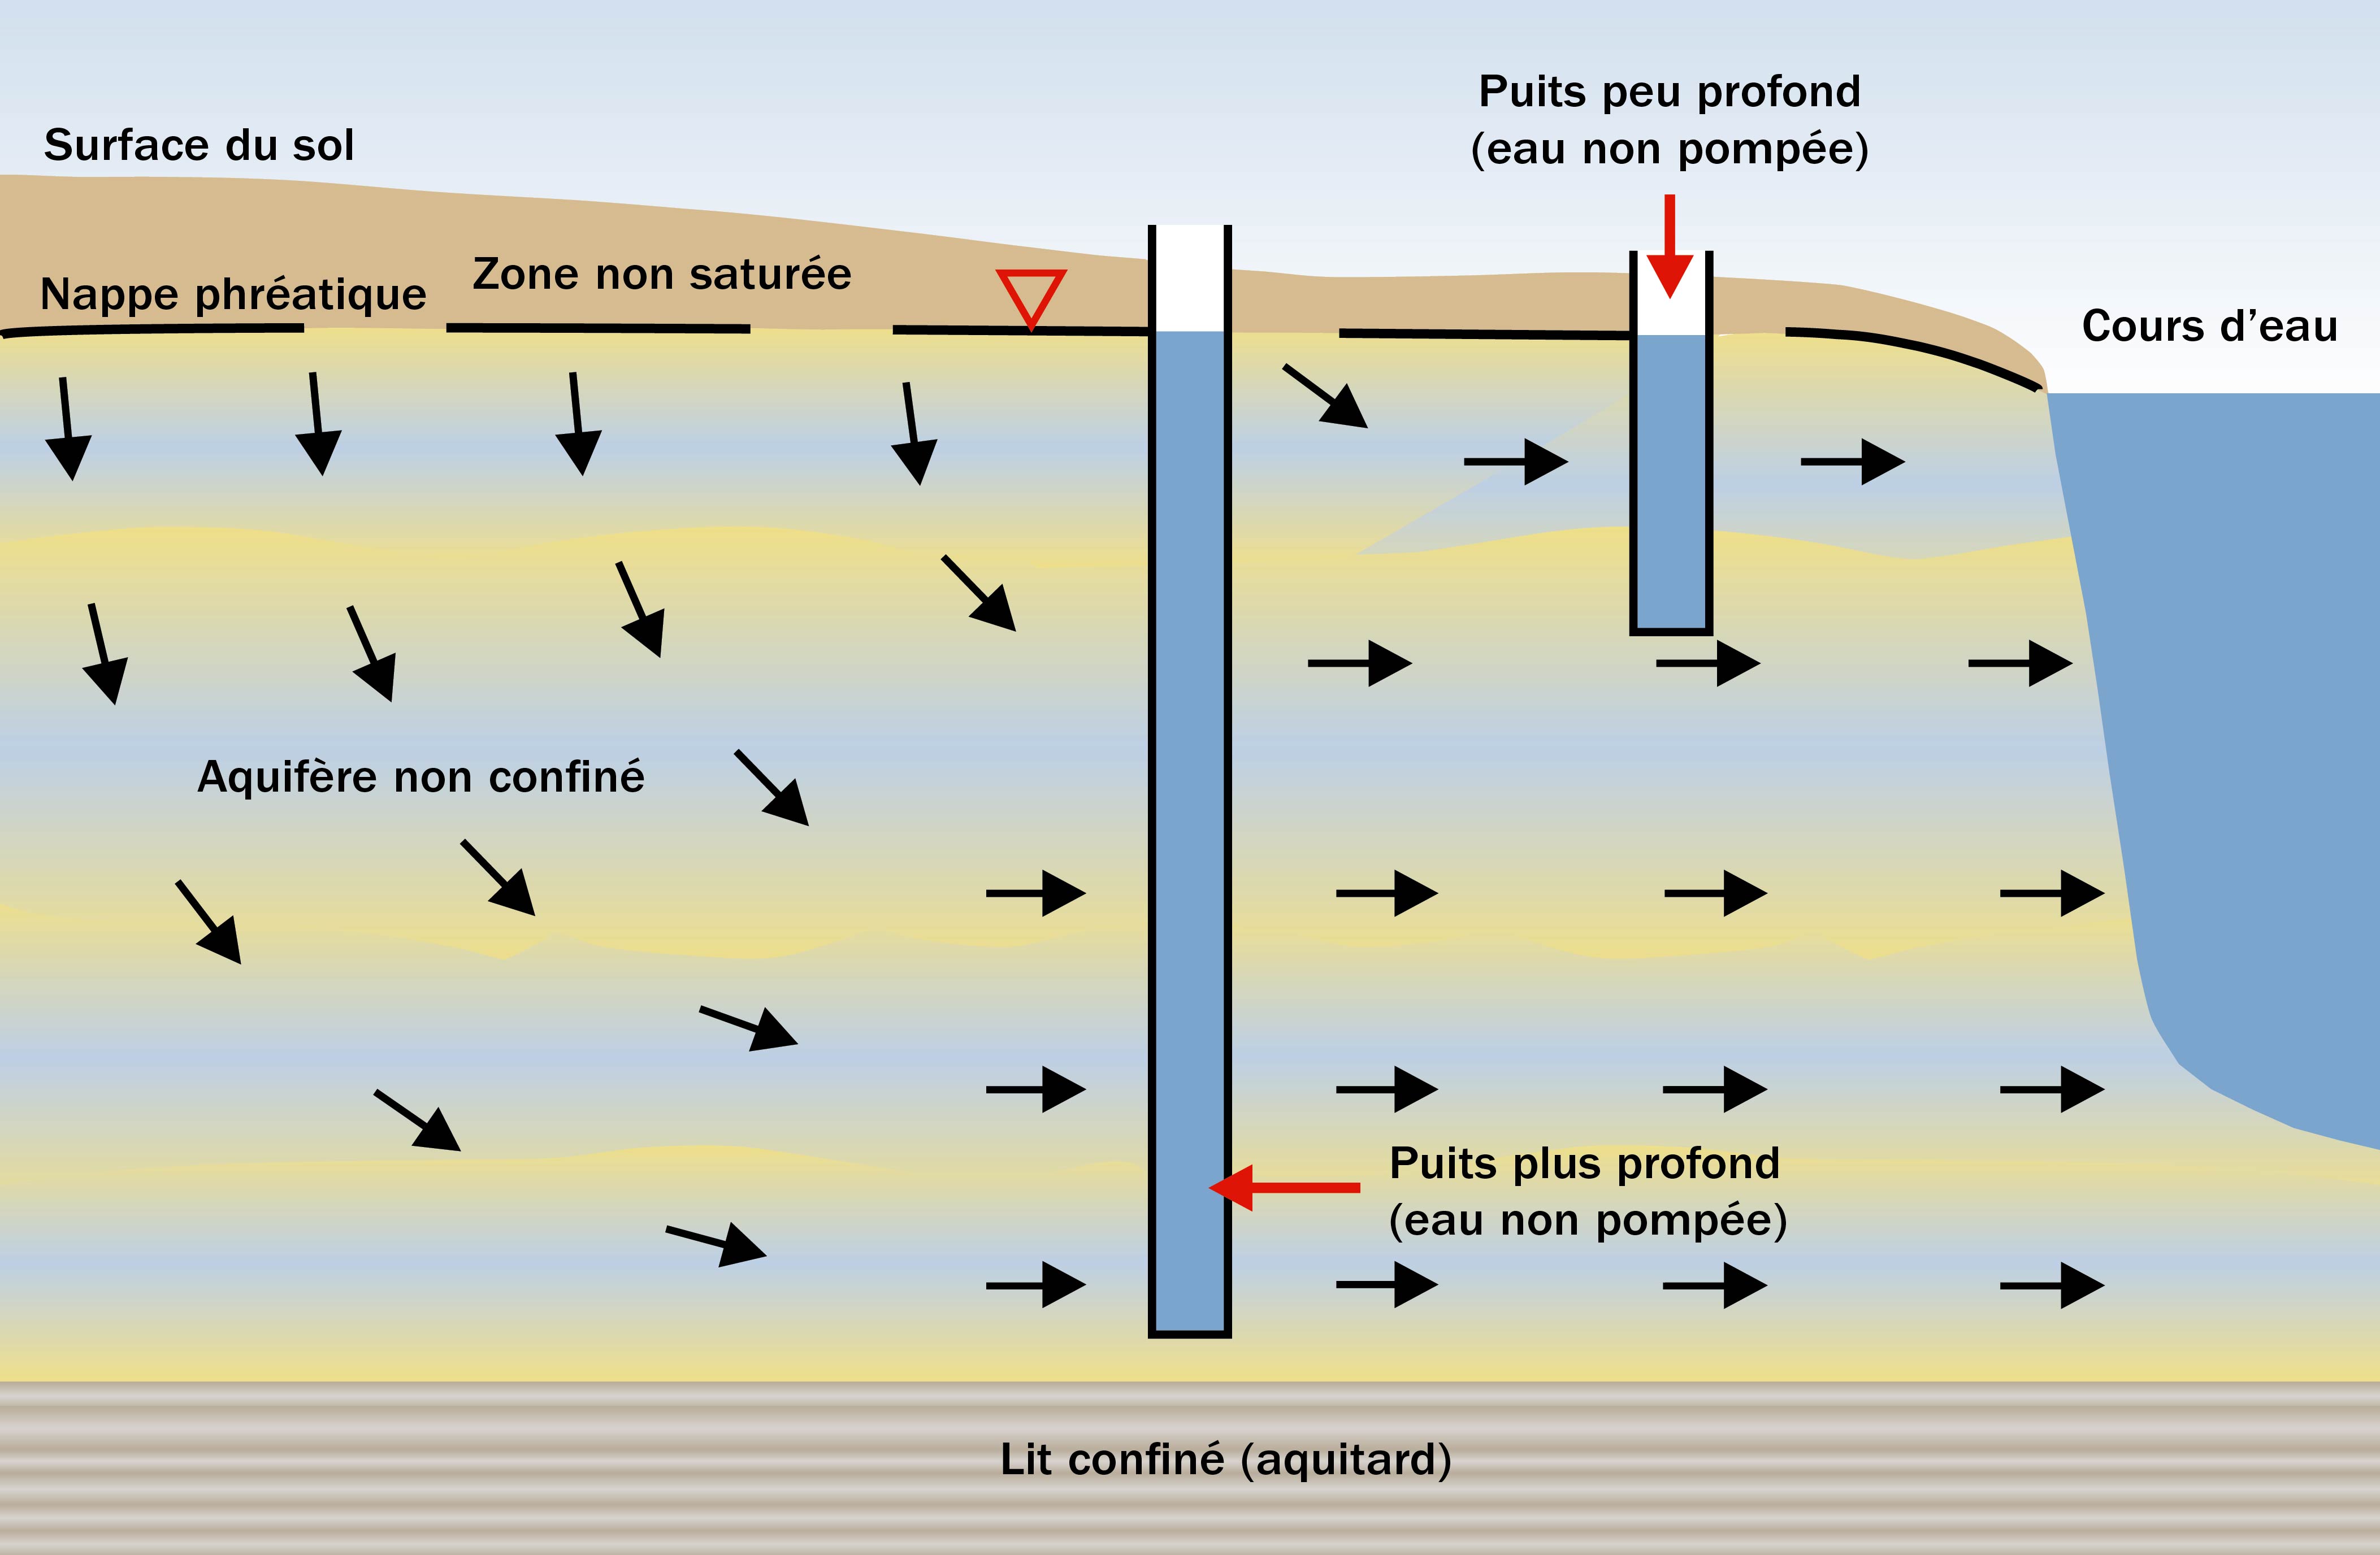 Figure 1. Le dessin montre le mouvement des eaux souterraines à partir de la nappe phréatique ou d’une zone non saturée à mesure que ces eaux s’écoulent à travers des puits profonds et peu profonds jusqu’à un cours d’eau à la droite des puits.